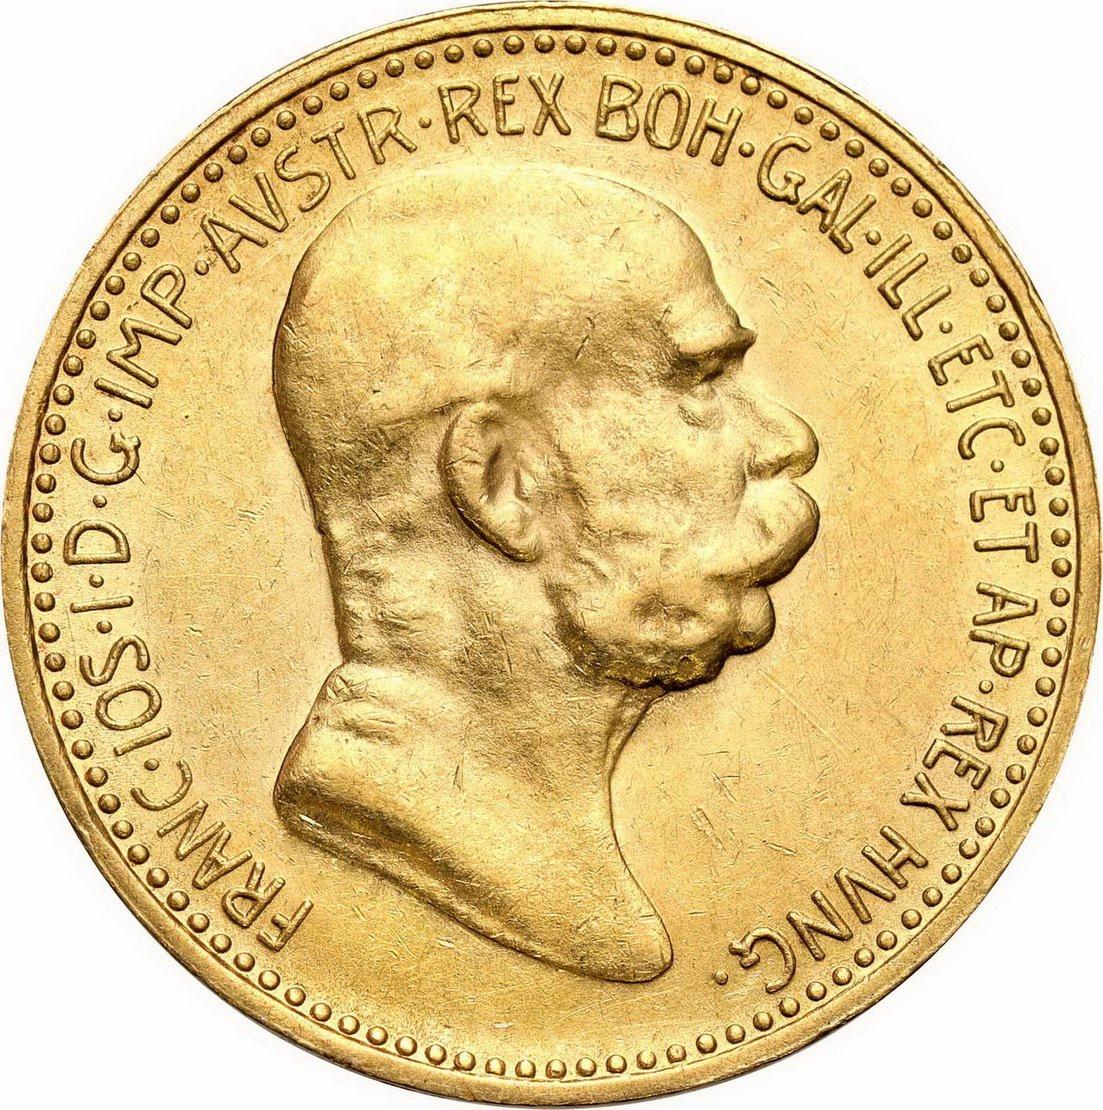 Austria Franciszek Józef I 10 koron 1909 (Schwartz)